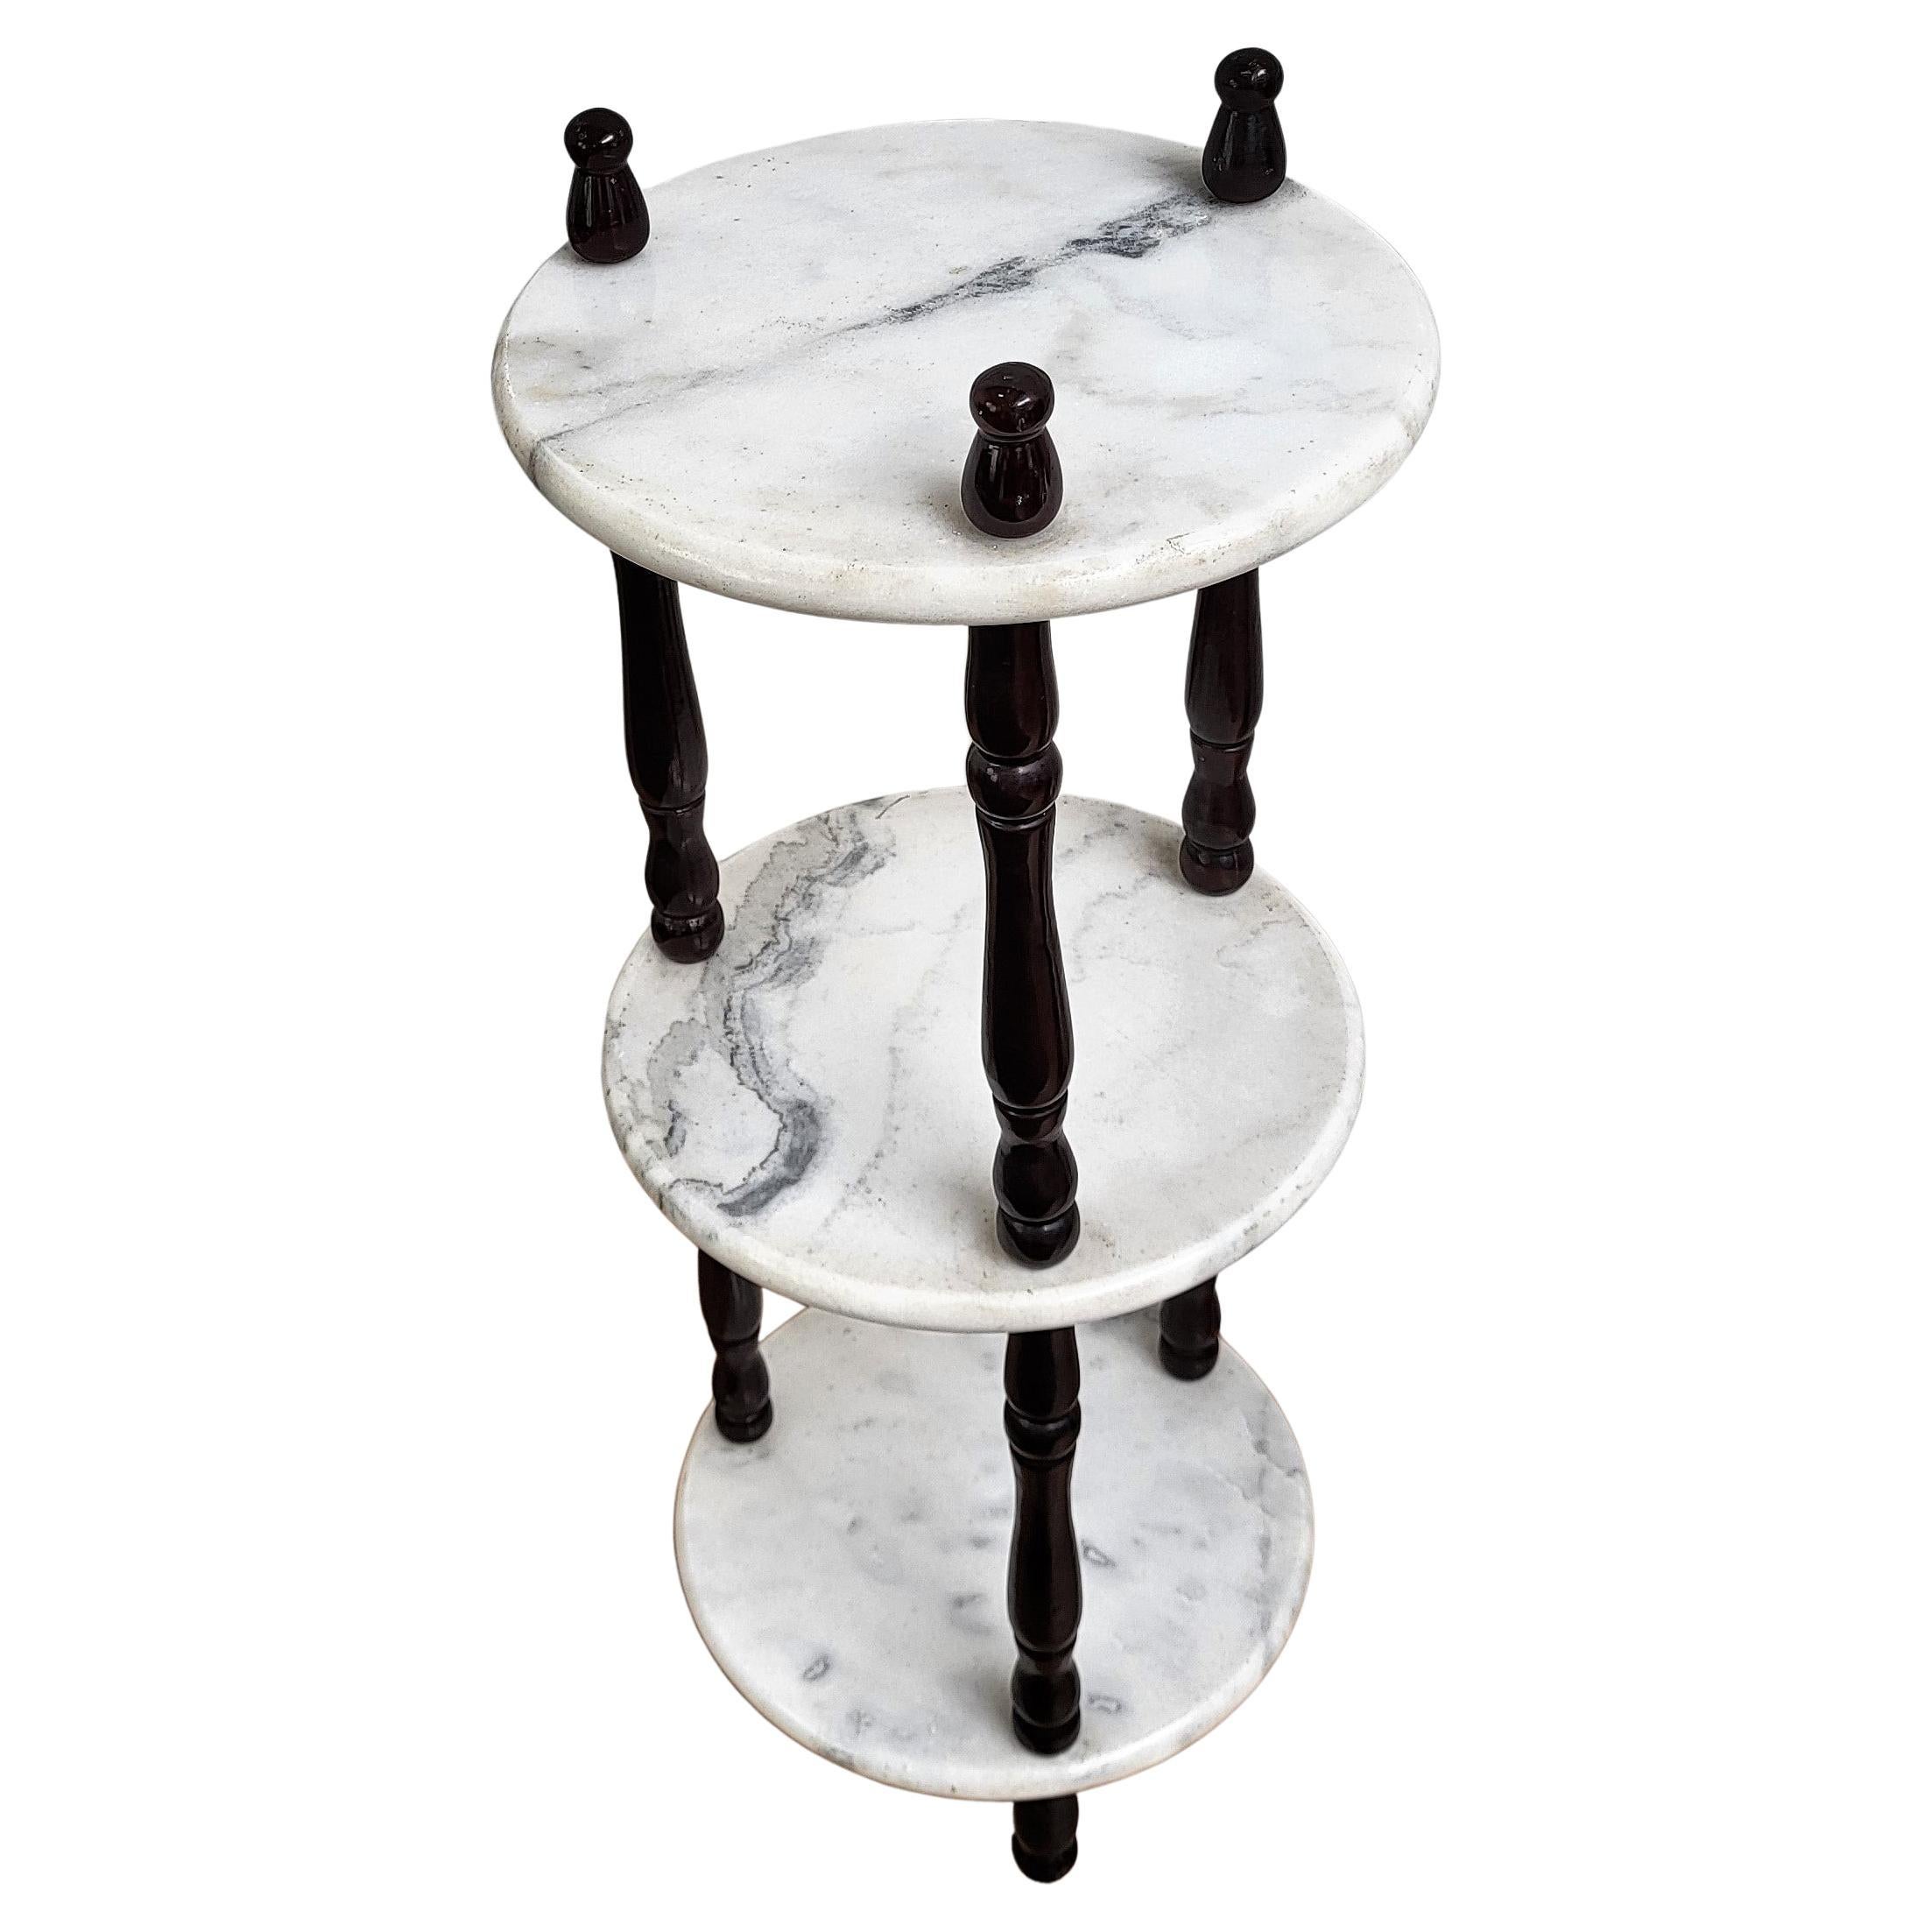 Petite table d'appoint italienne des années 60 à trois niveaux en bois et marbre blanc de Carrare